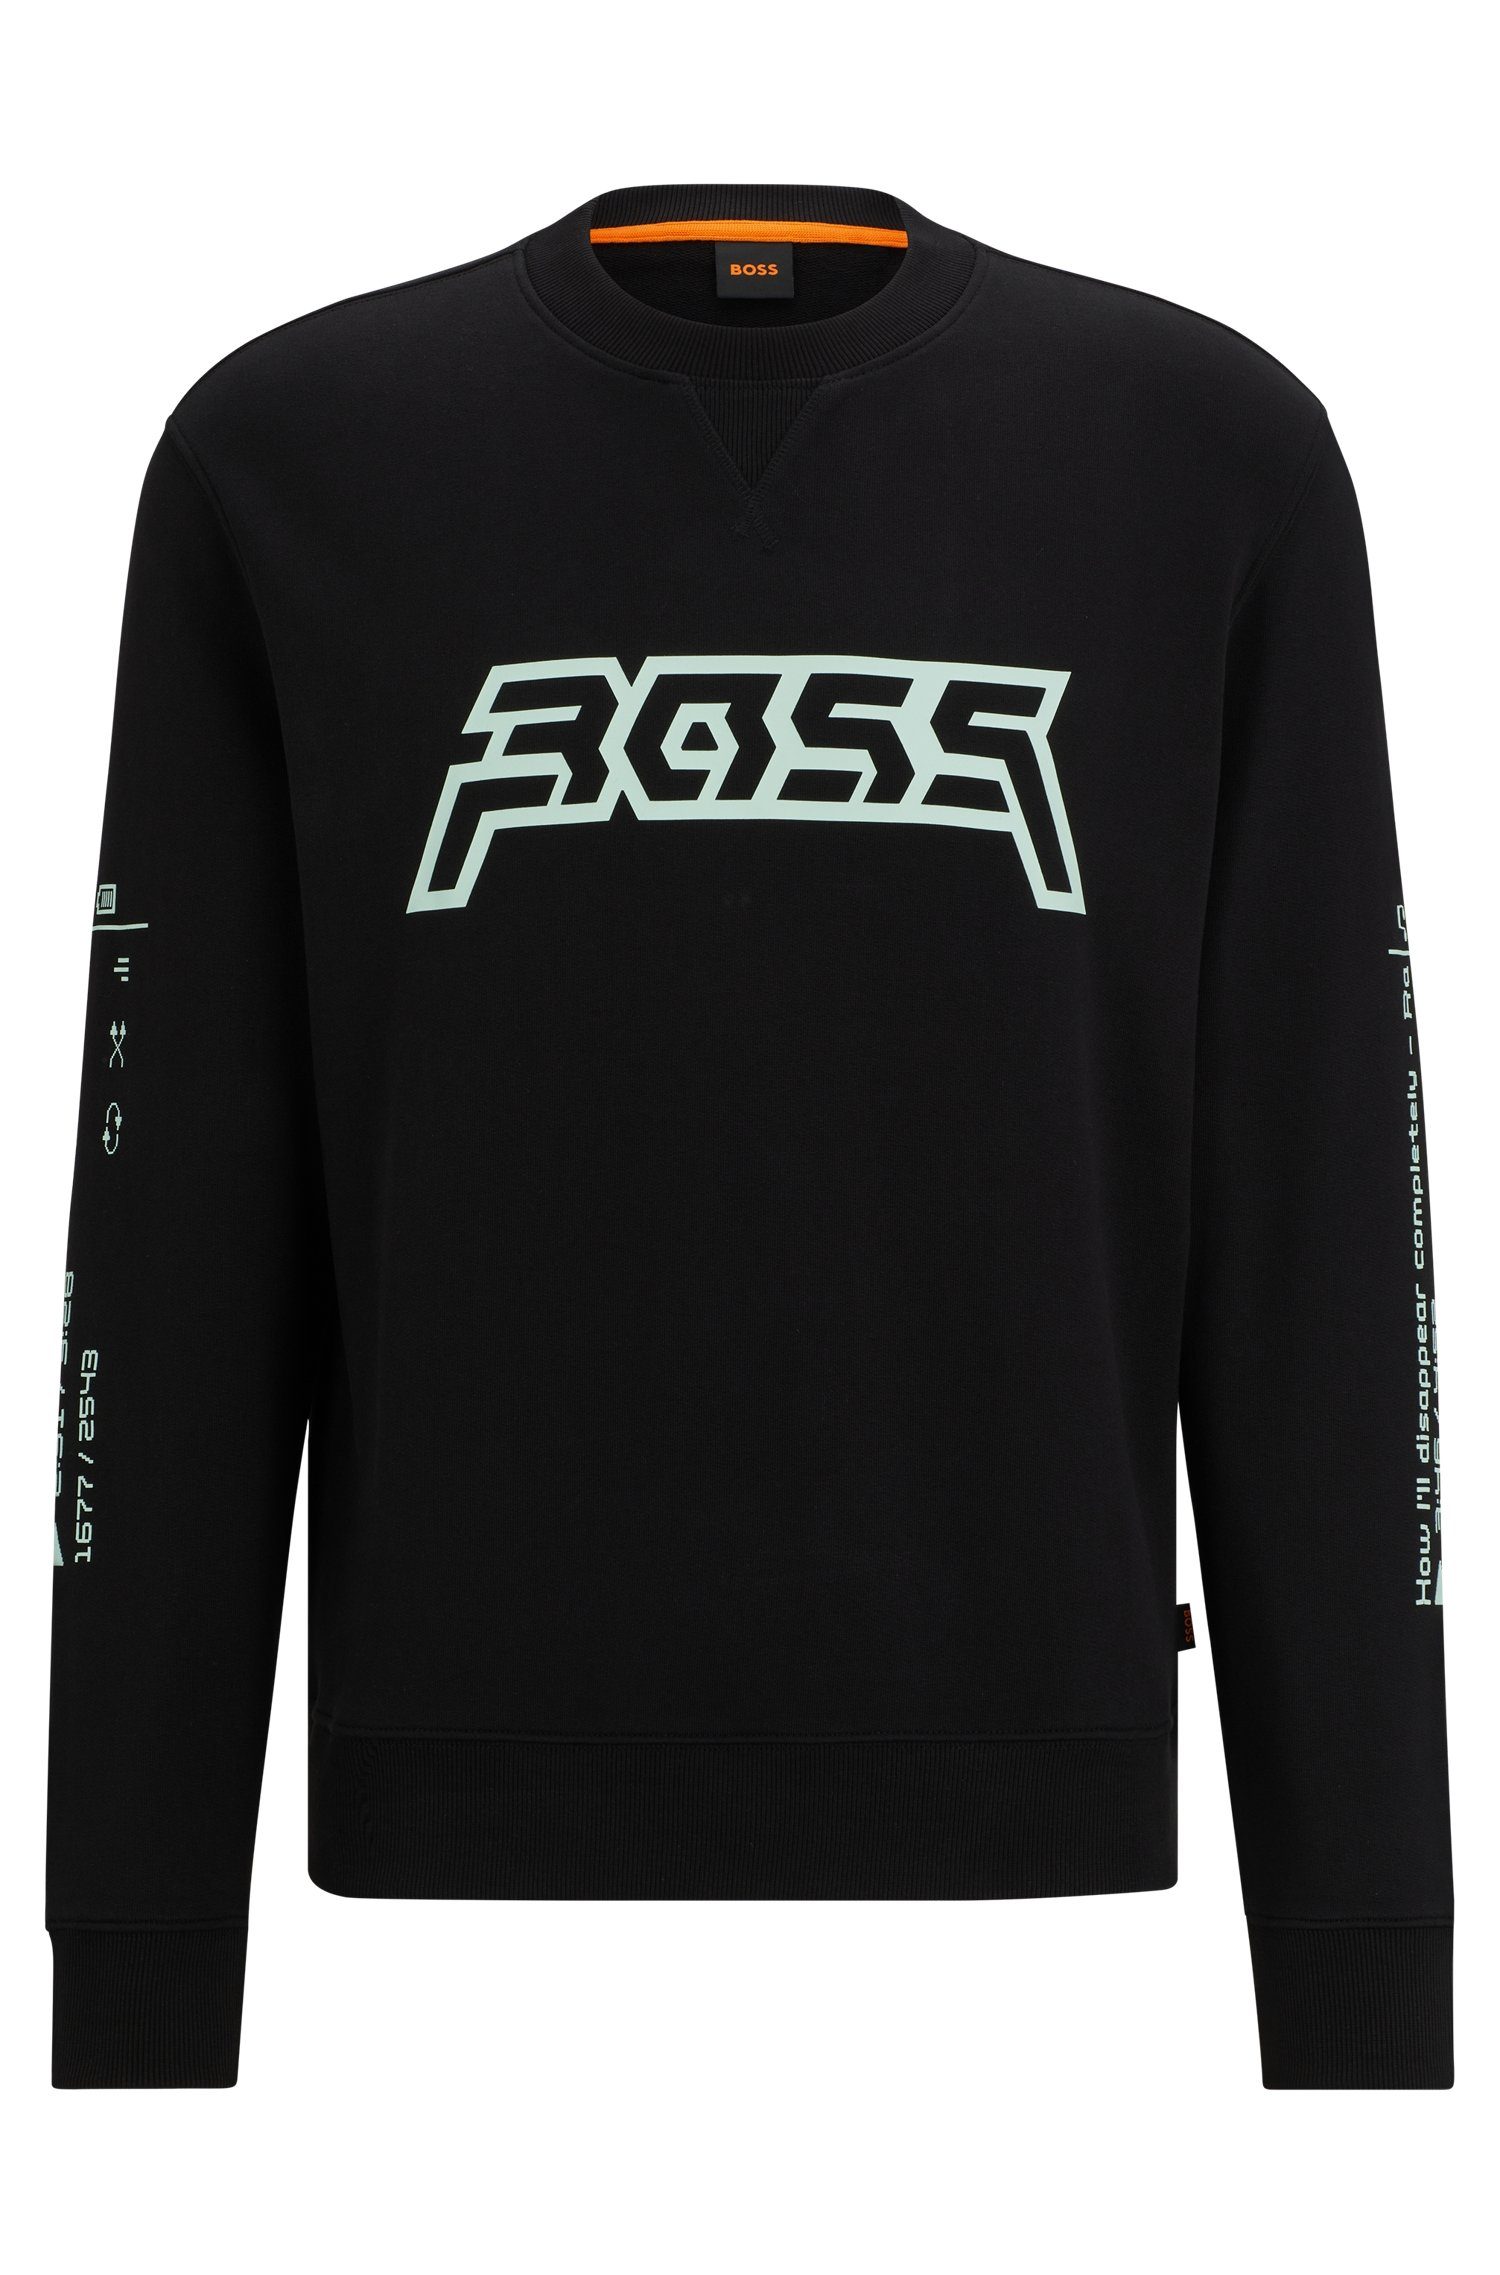 BOSS ORANGE Sweatshirt WeGrafix mit BOSS Schriftzug